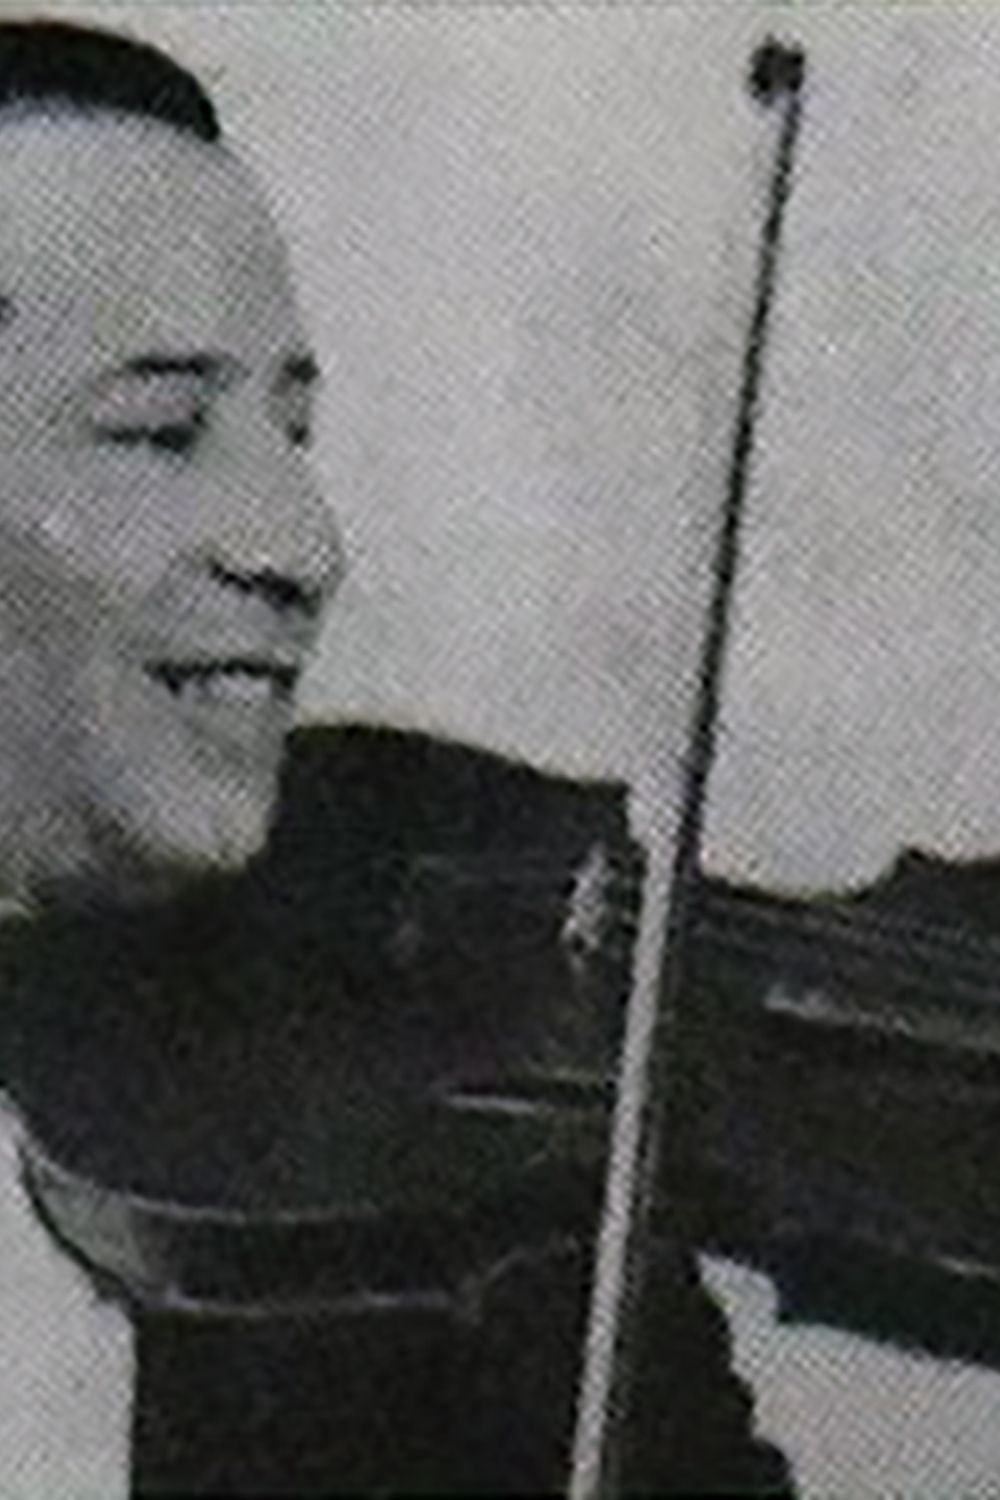 Ernesto Ponzio, Argentine Tango musician and composer.